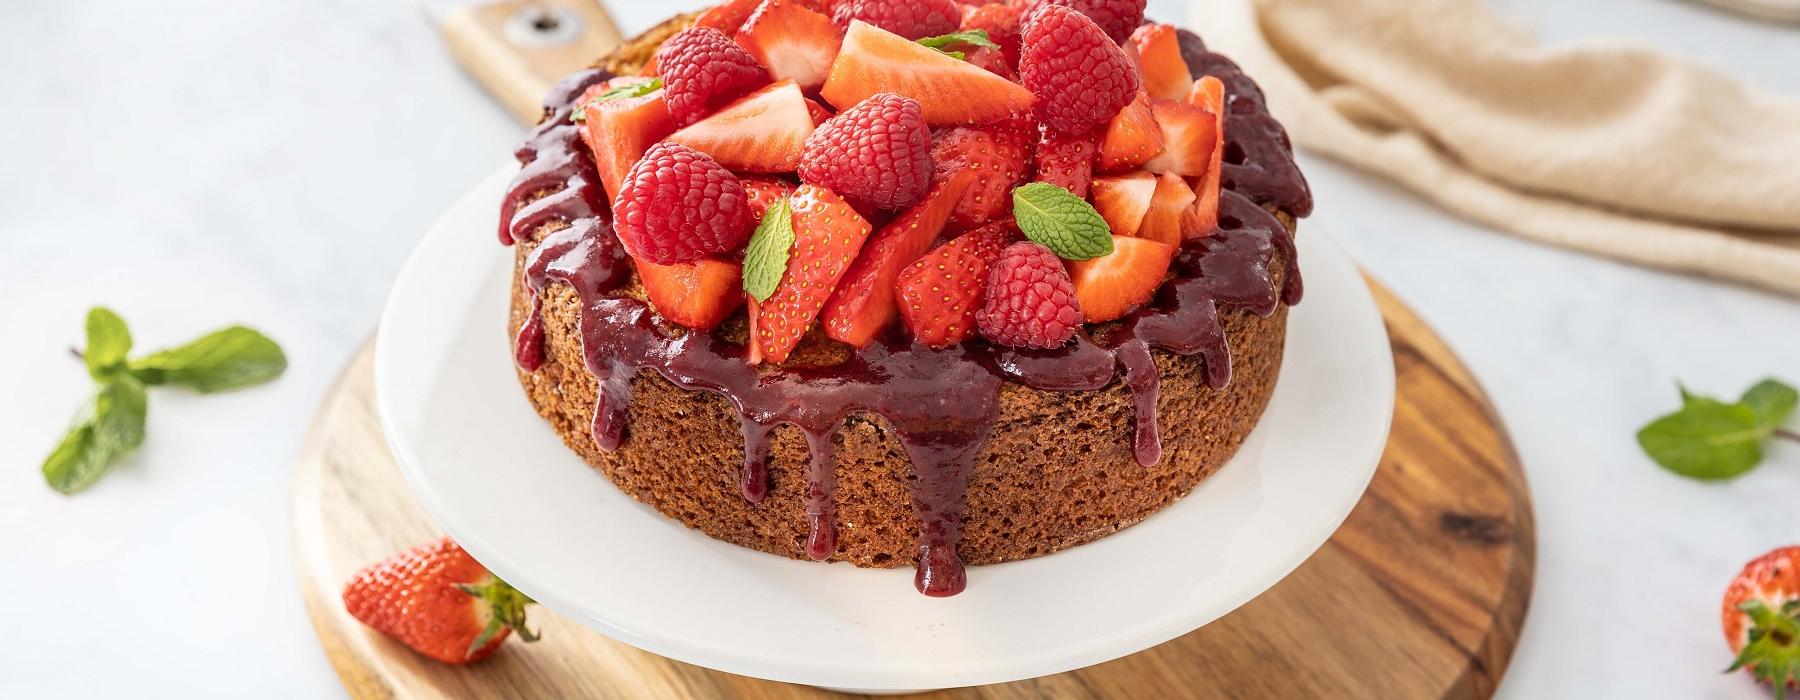 Gâteau fraises & framboises